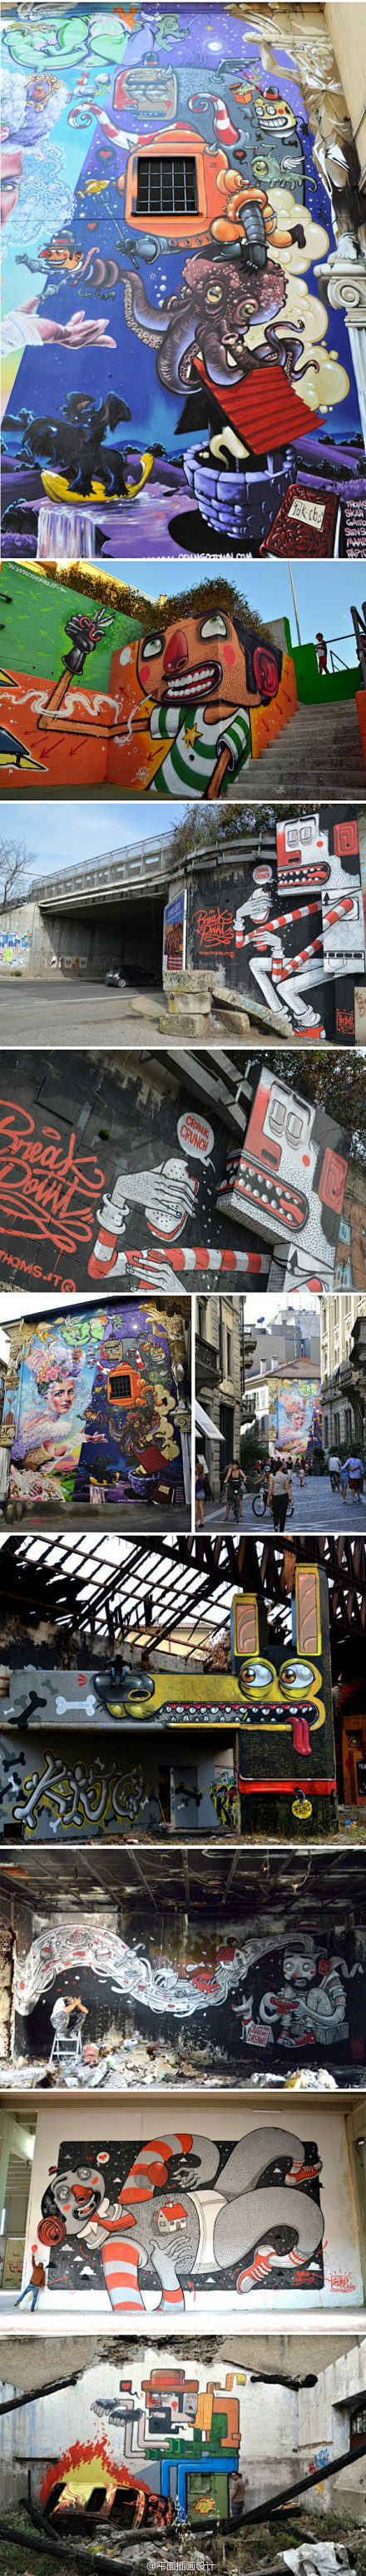 意大利艺术家迭戈德拉波斯塔的街头涂鸦-平...